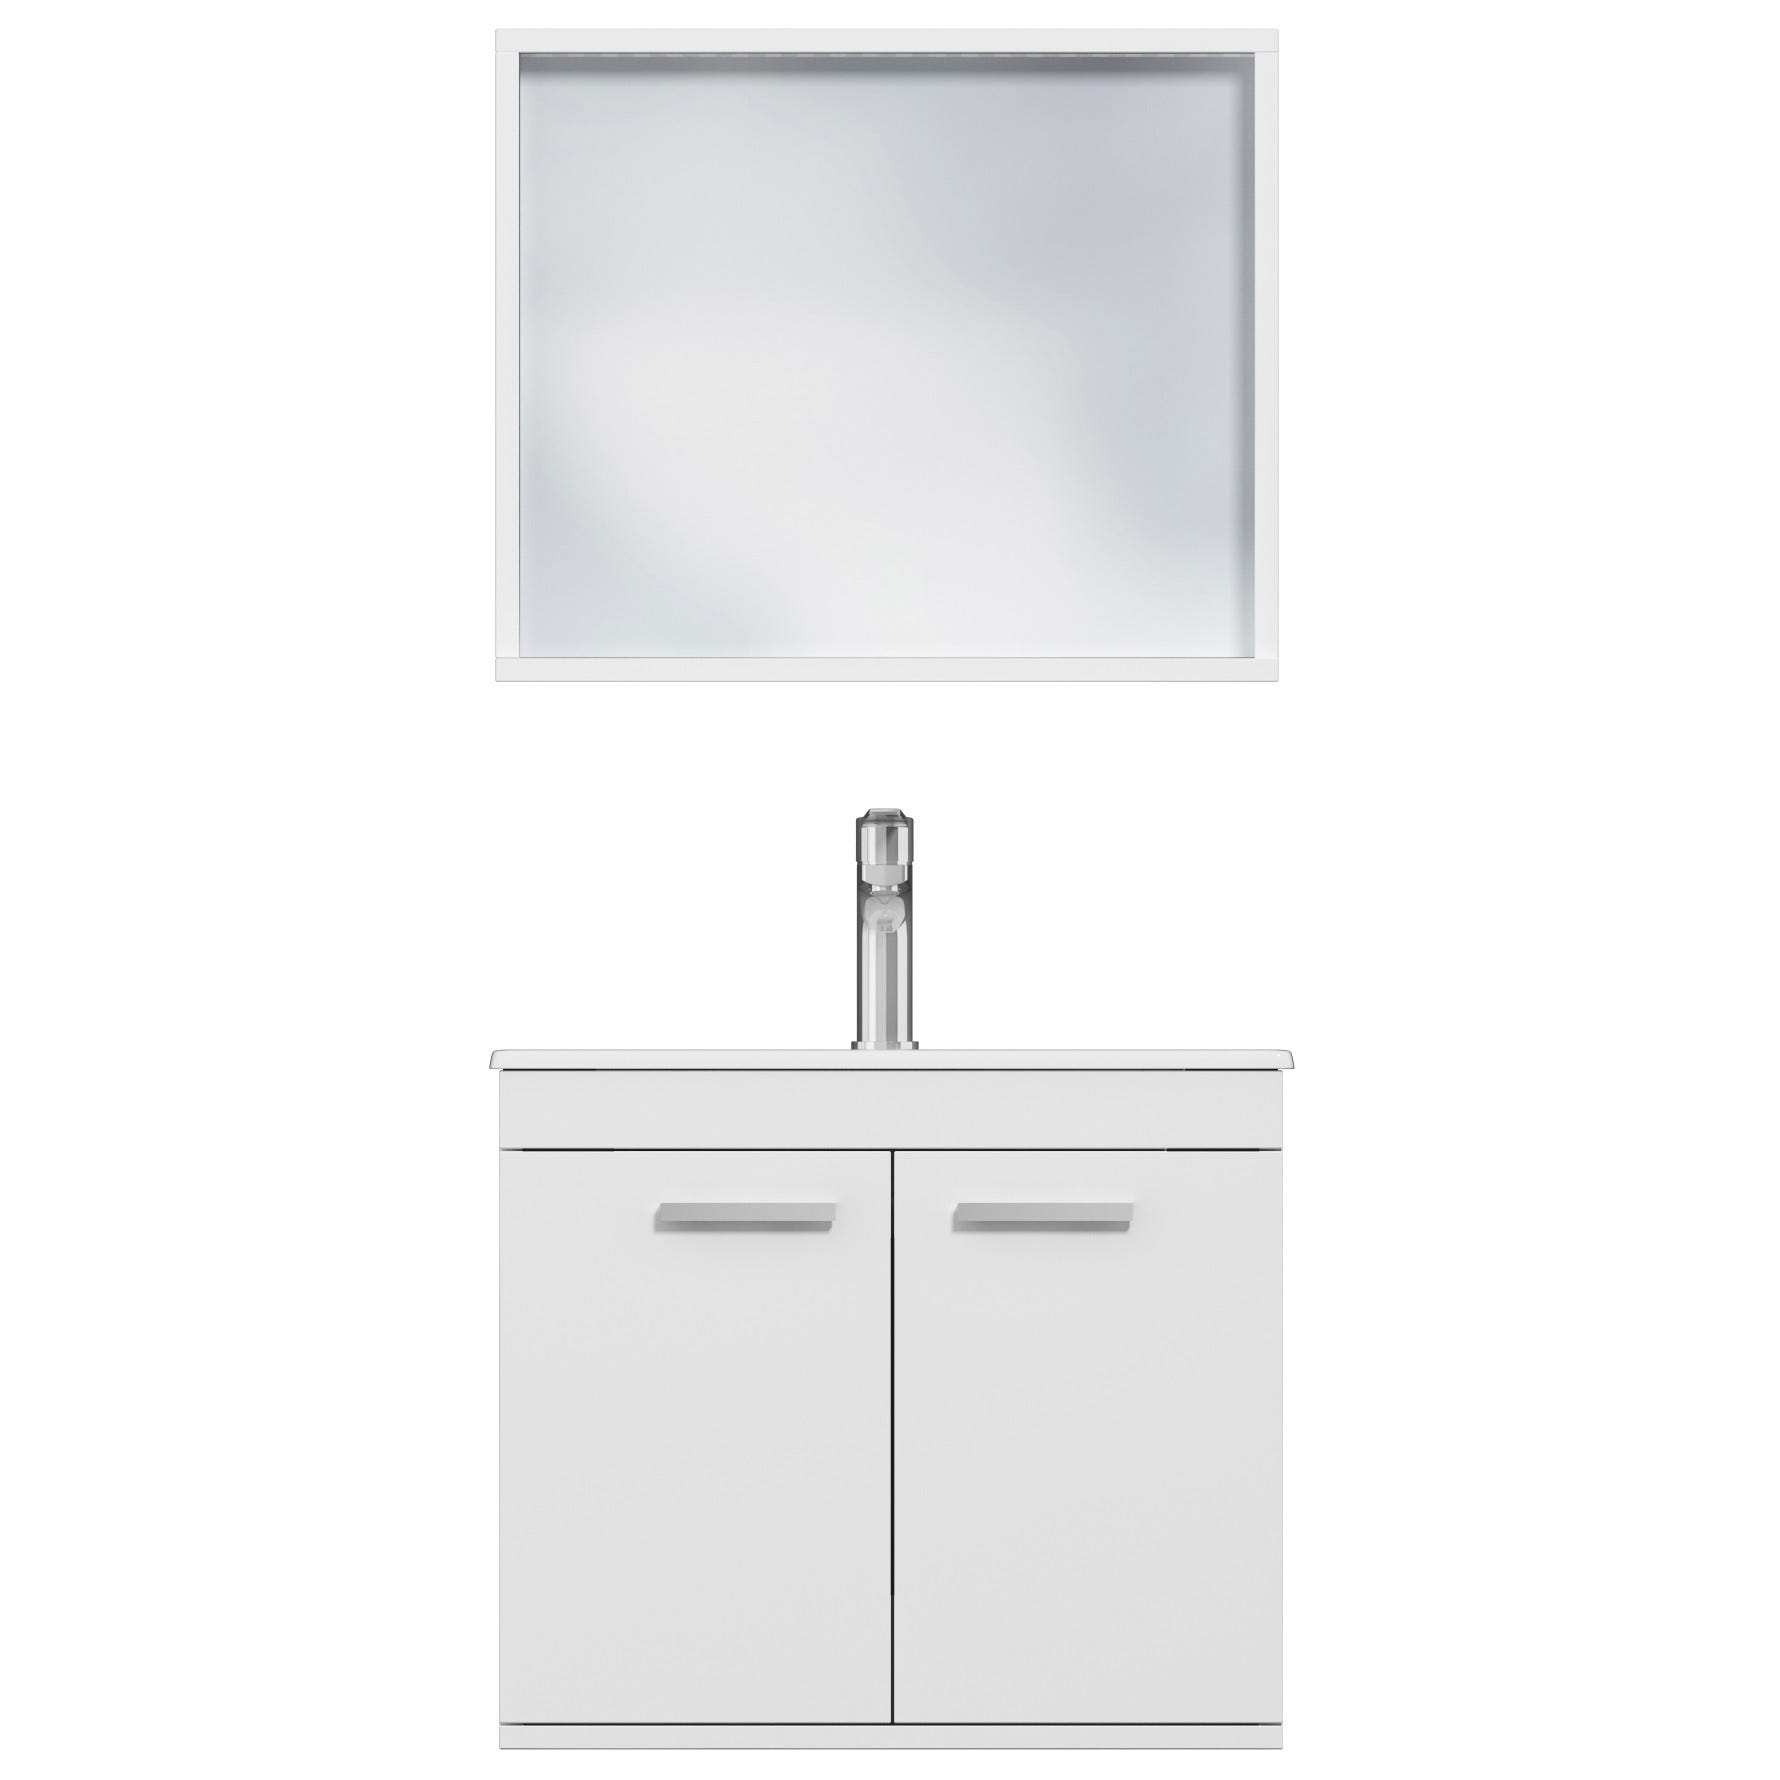 RUBITE Meuble salle de bain simple vasque 2 portes blanc largeur 60 cm + miroir cadre 4